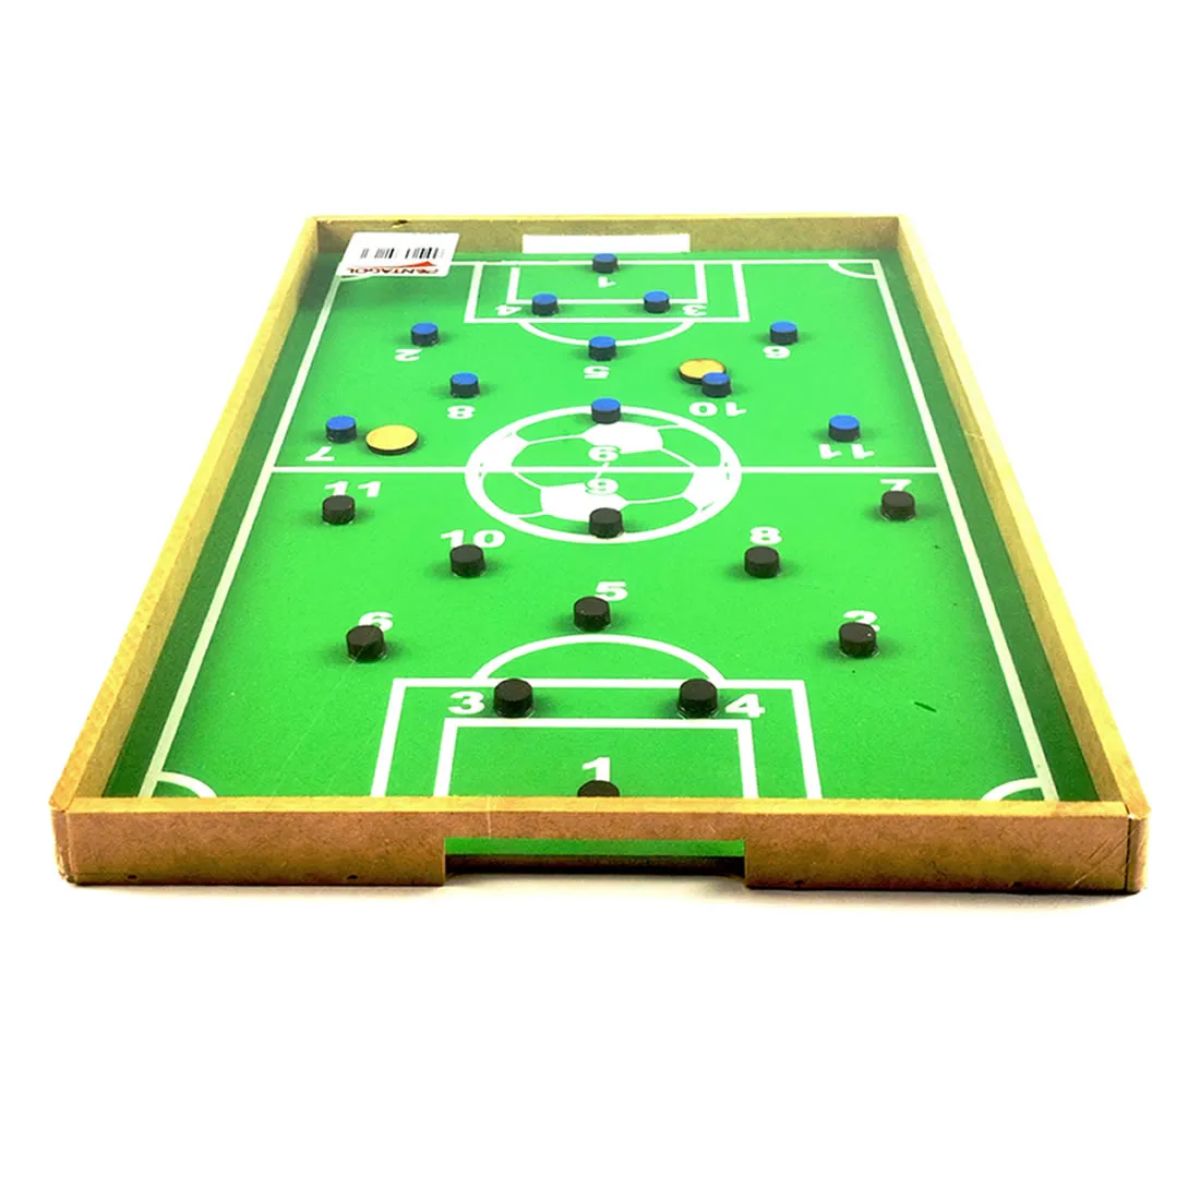 Jogo de tabuleiro -Dedobol Prime - Futebol - Madeira - Pentagol - Loja do Competidor